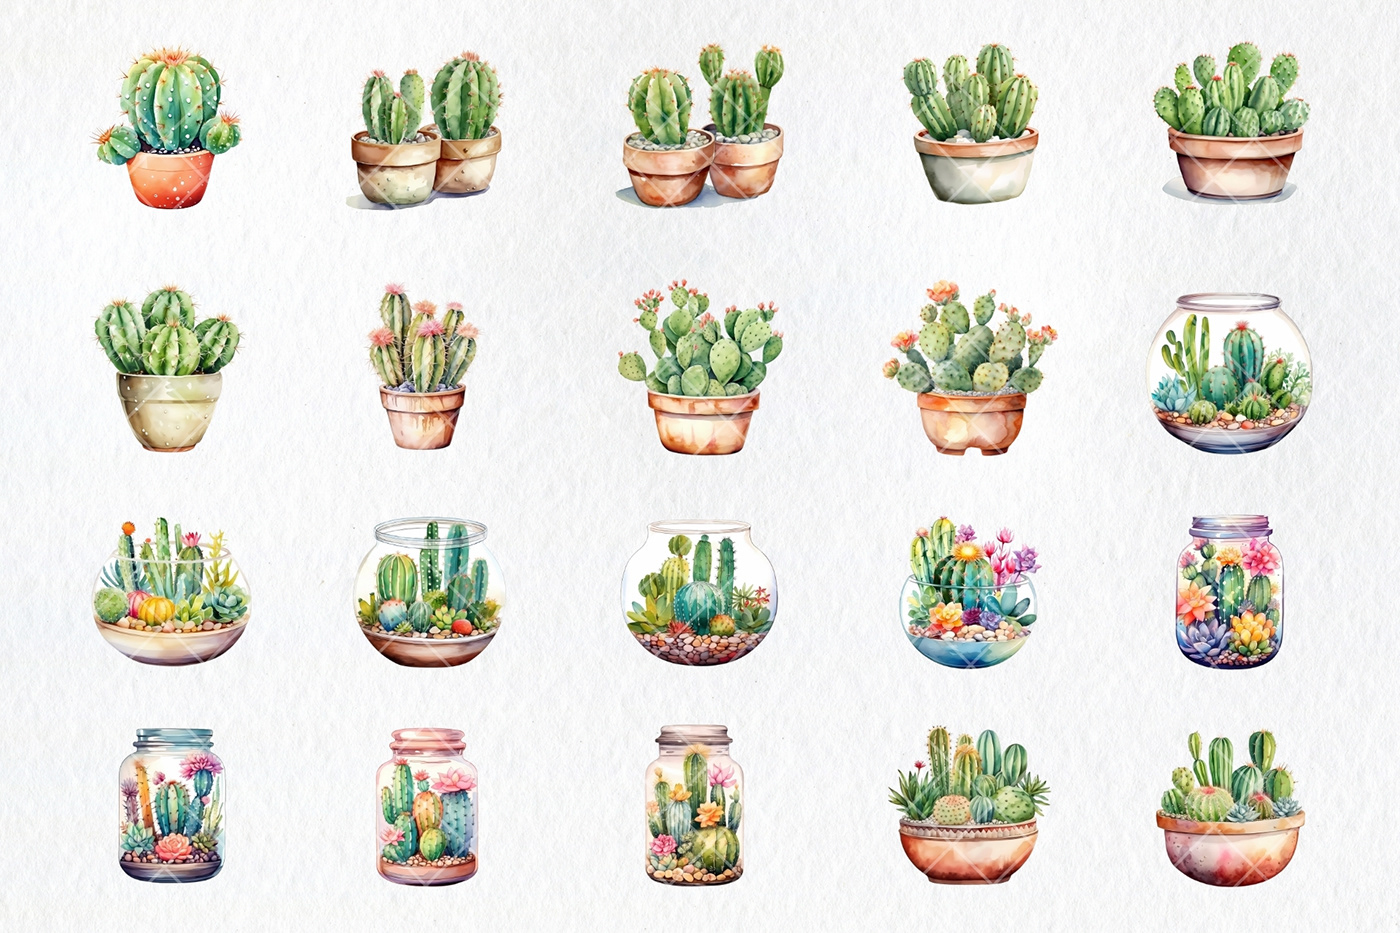 cactus plants botanical watercolor painting   Digital Art  Succulent clipart cute House Plants